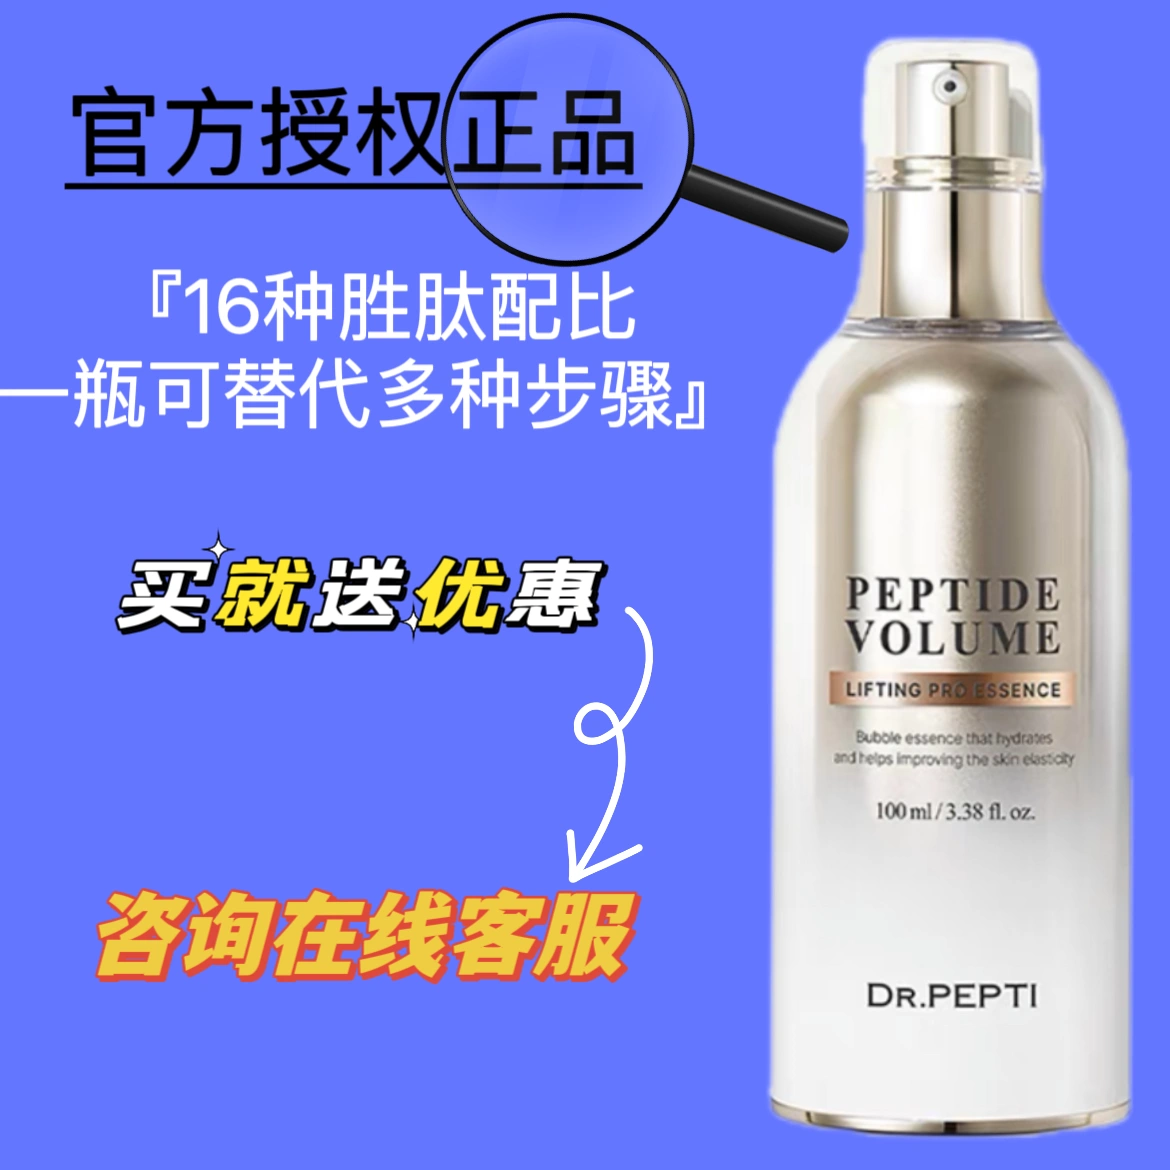 Dr.Pepti多肽精华金瓶魔法水光抗保湿紧致提亮胜肽新品泡泡精华-Taobao